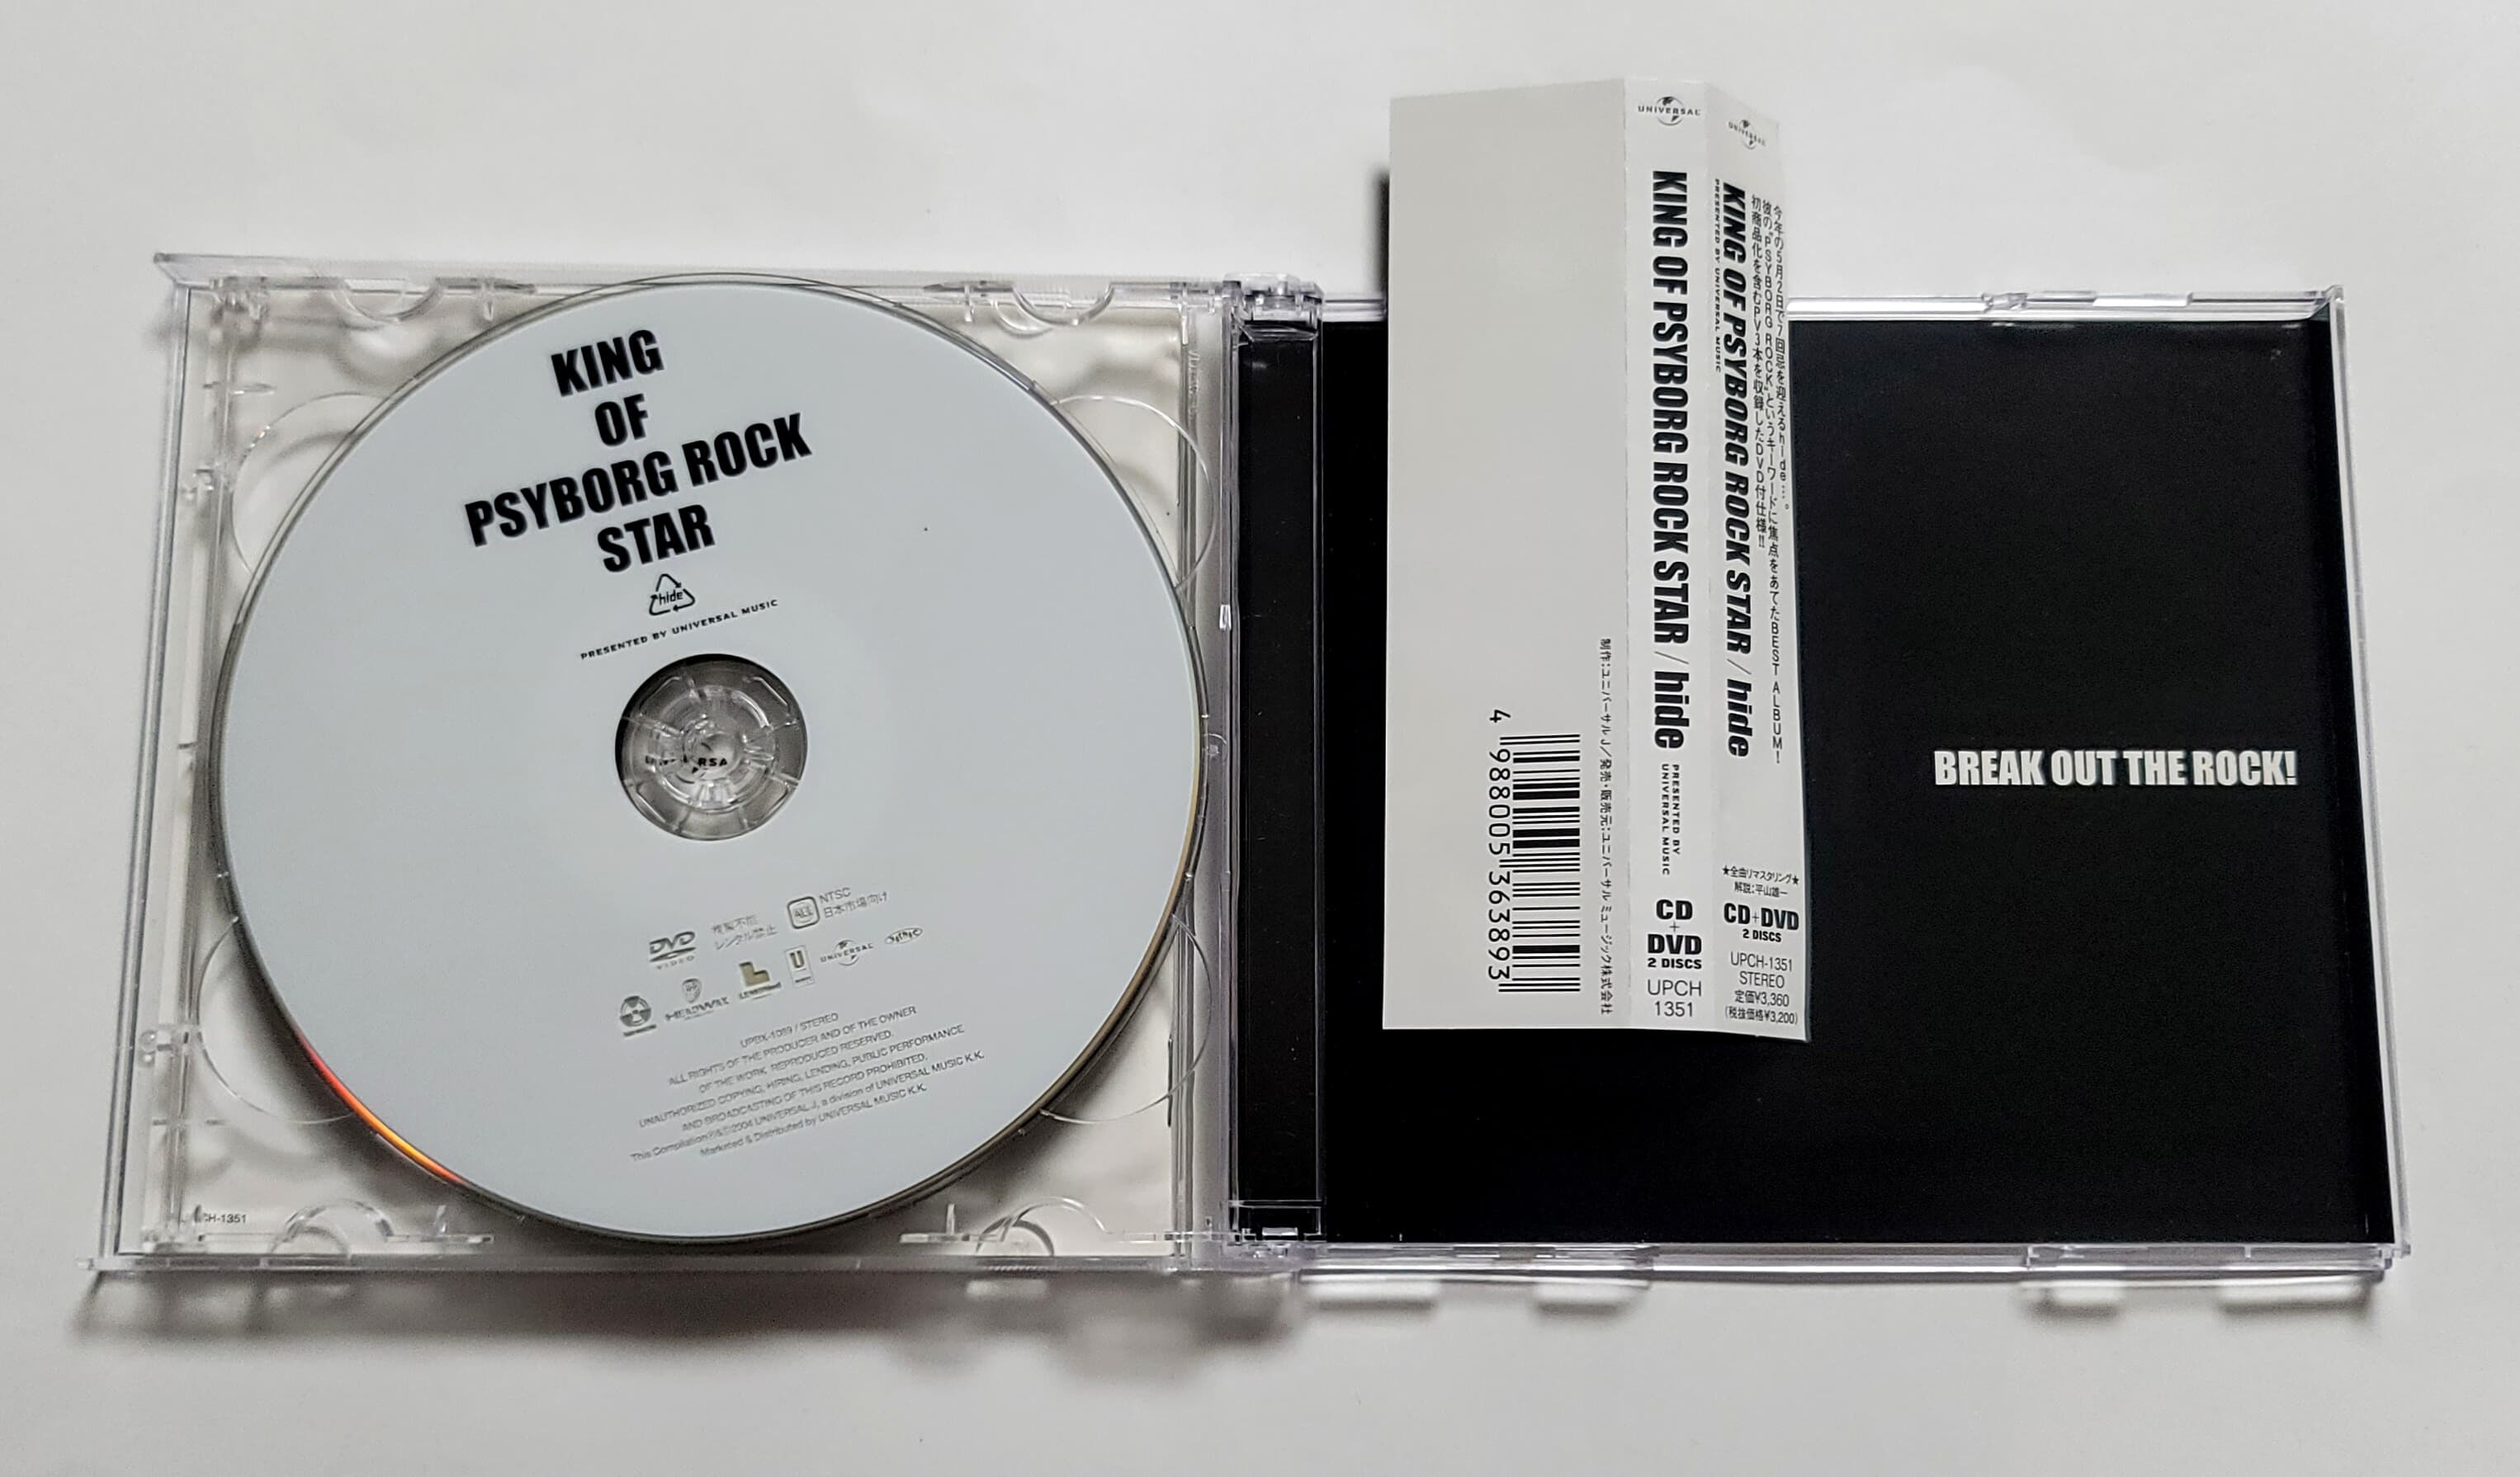 (일본반 CD+DVD 오비포함) Hide (히데) - KING OF PSYBORG ROCK STAR